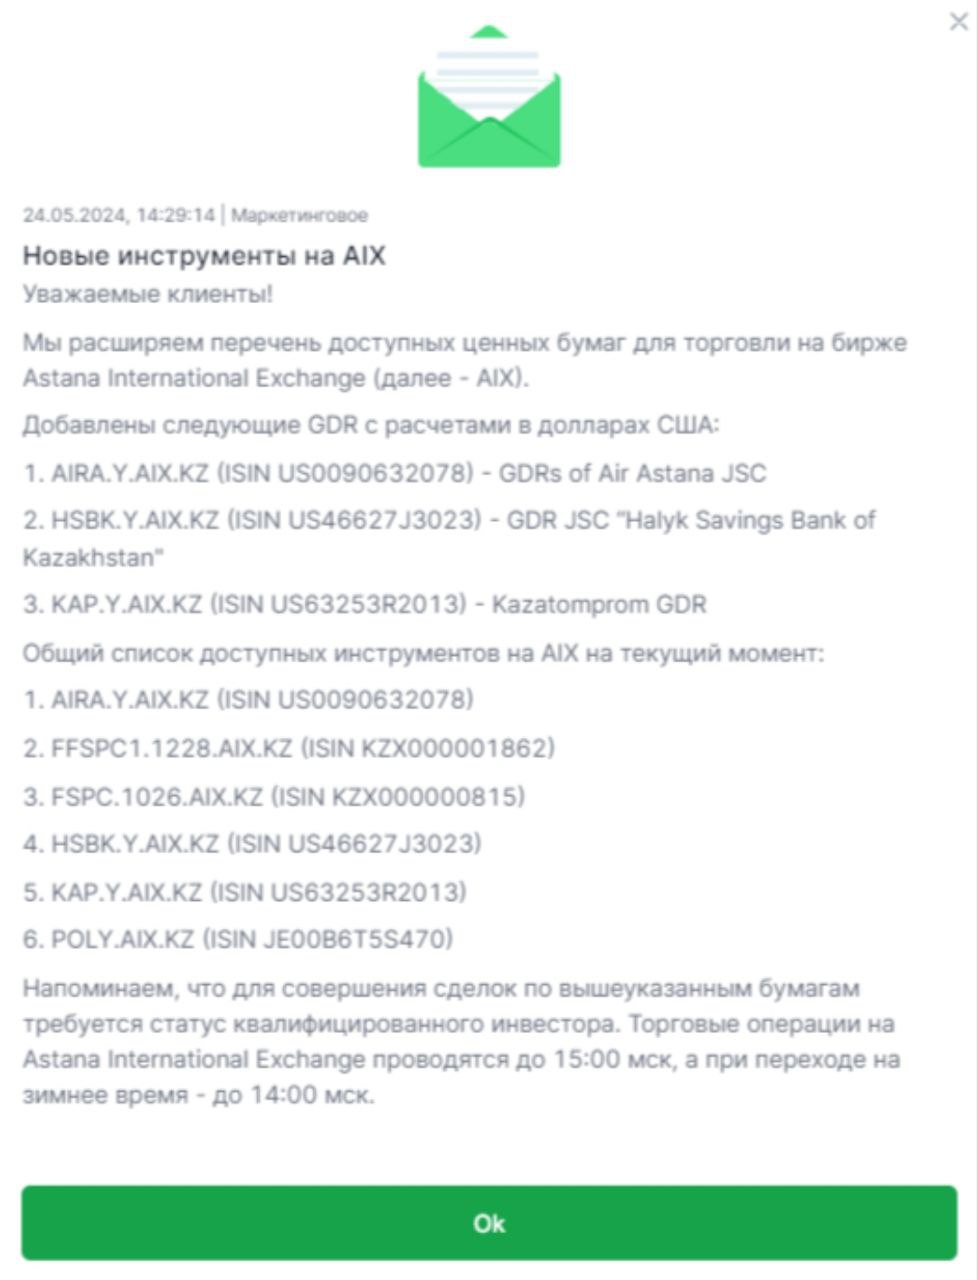 Сообщение, разосланное 24 мая клиентам &laquo;Цифра брокер&raquo;, о расширении списка доступных финансовых инструментов, которые торгуются на казахстанской бирже AIX